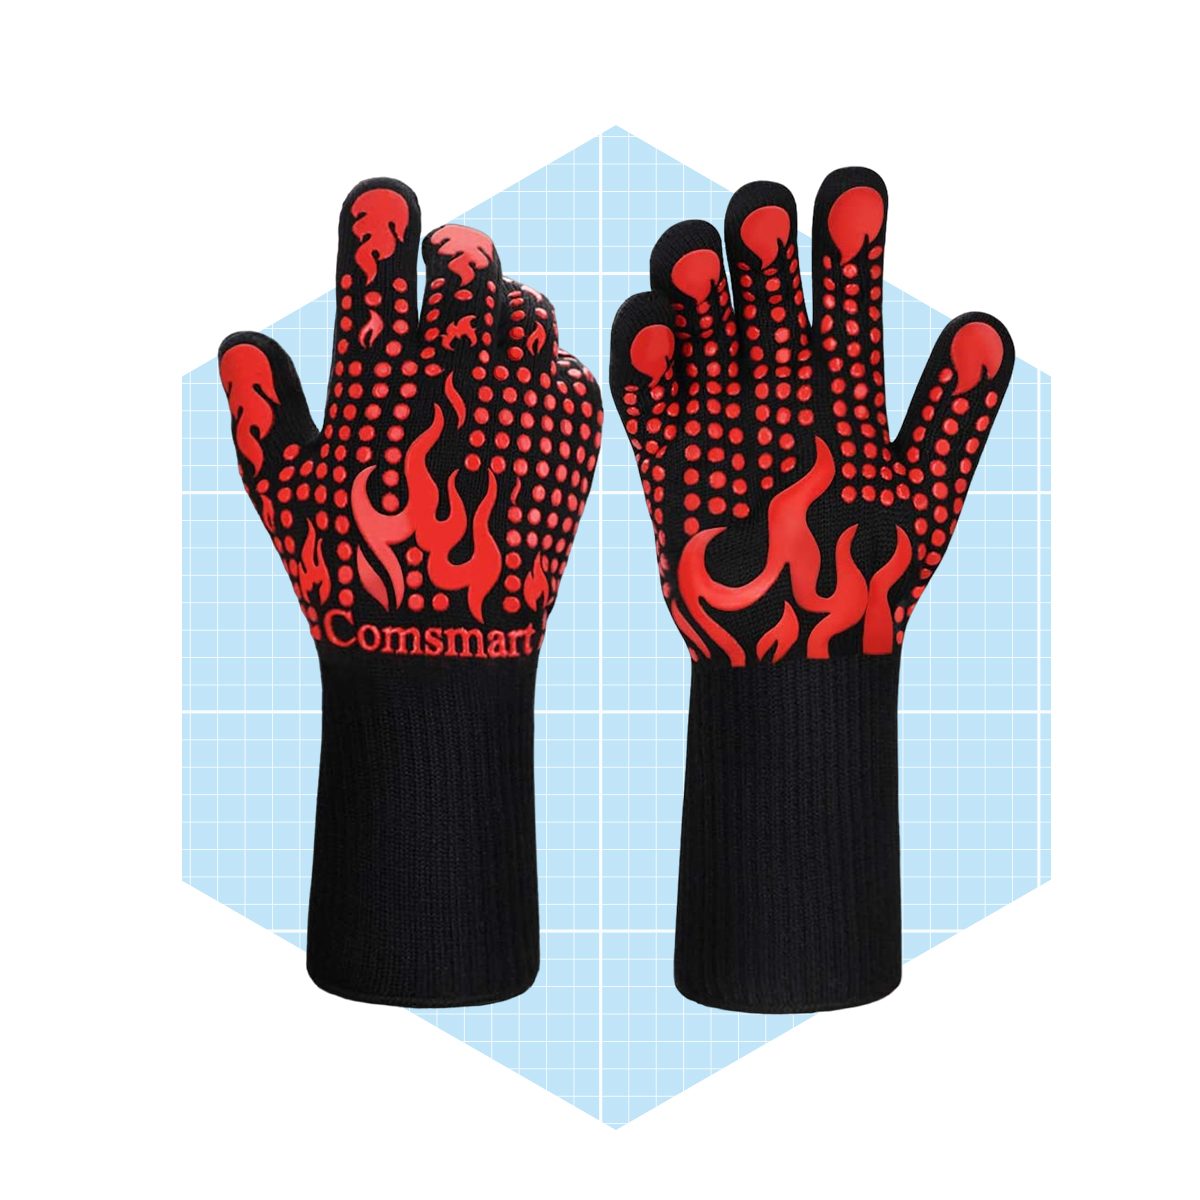 10 Best Grilling Gloves for Safe, BurnFree Outdoor Cooking